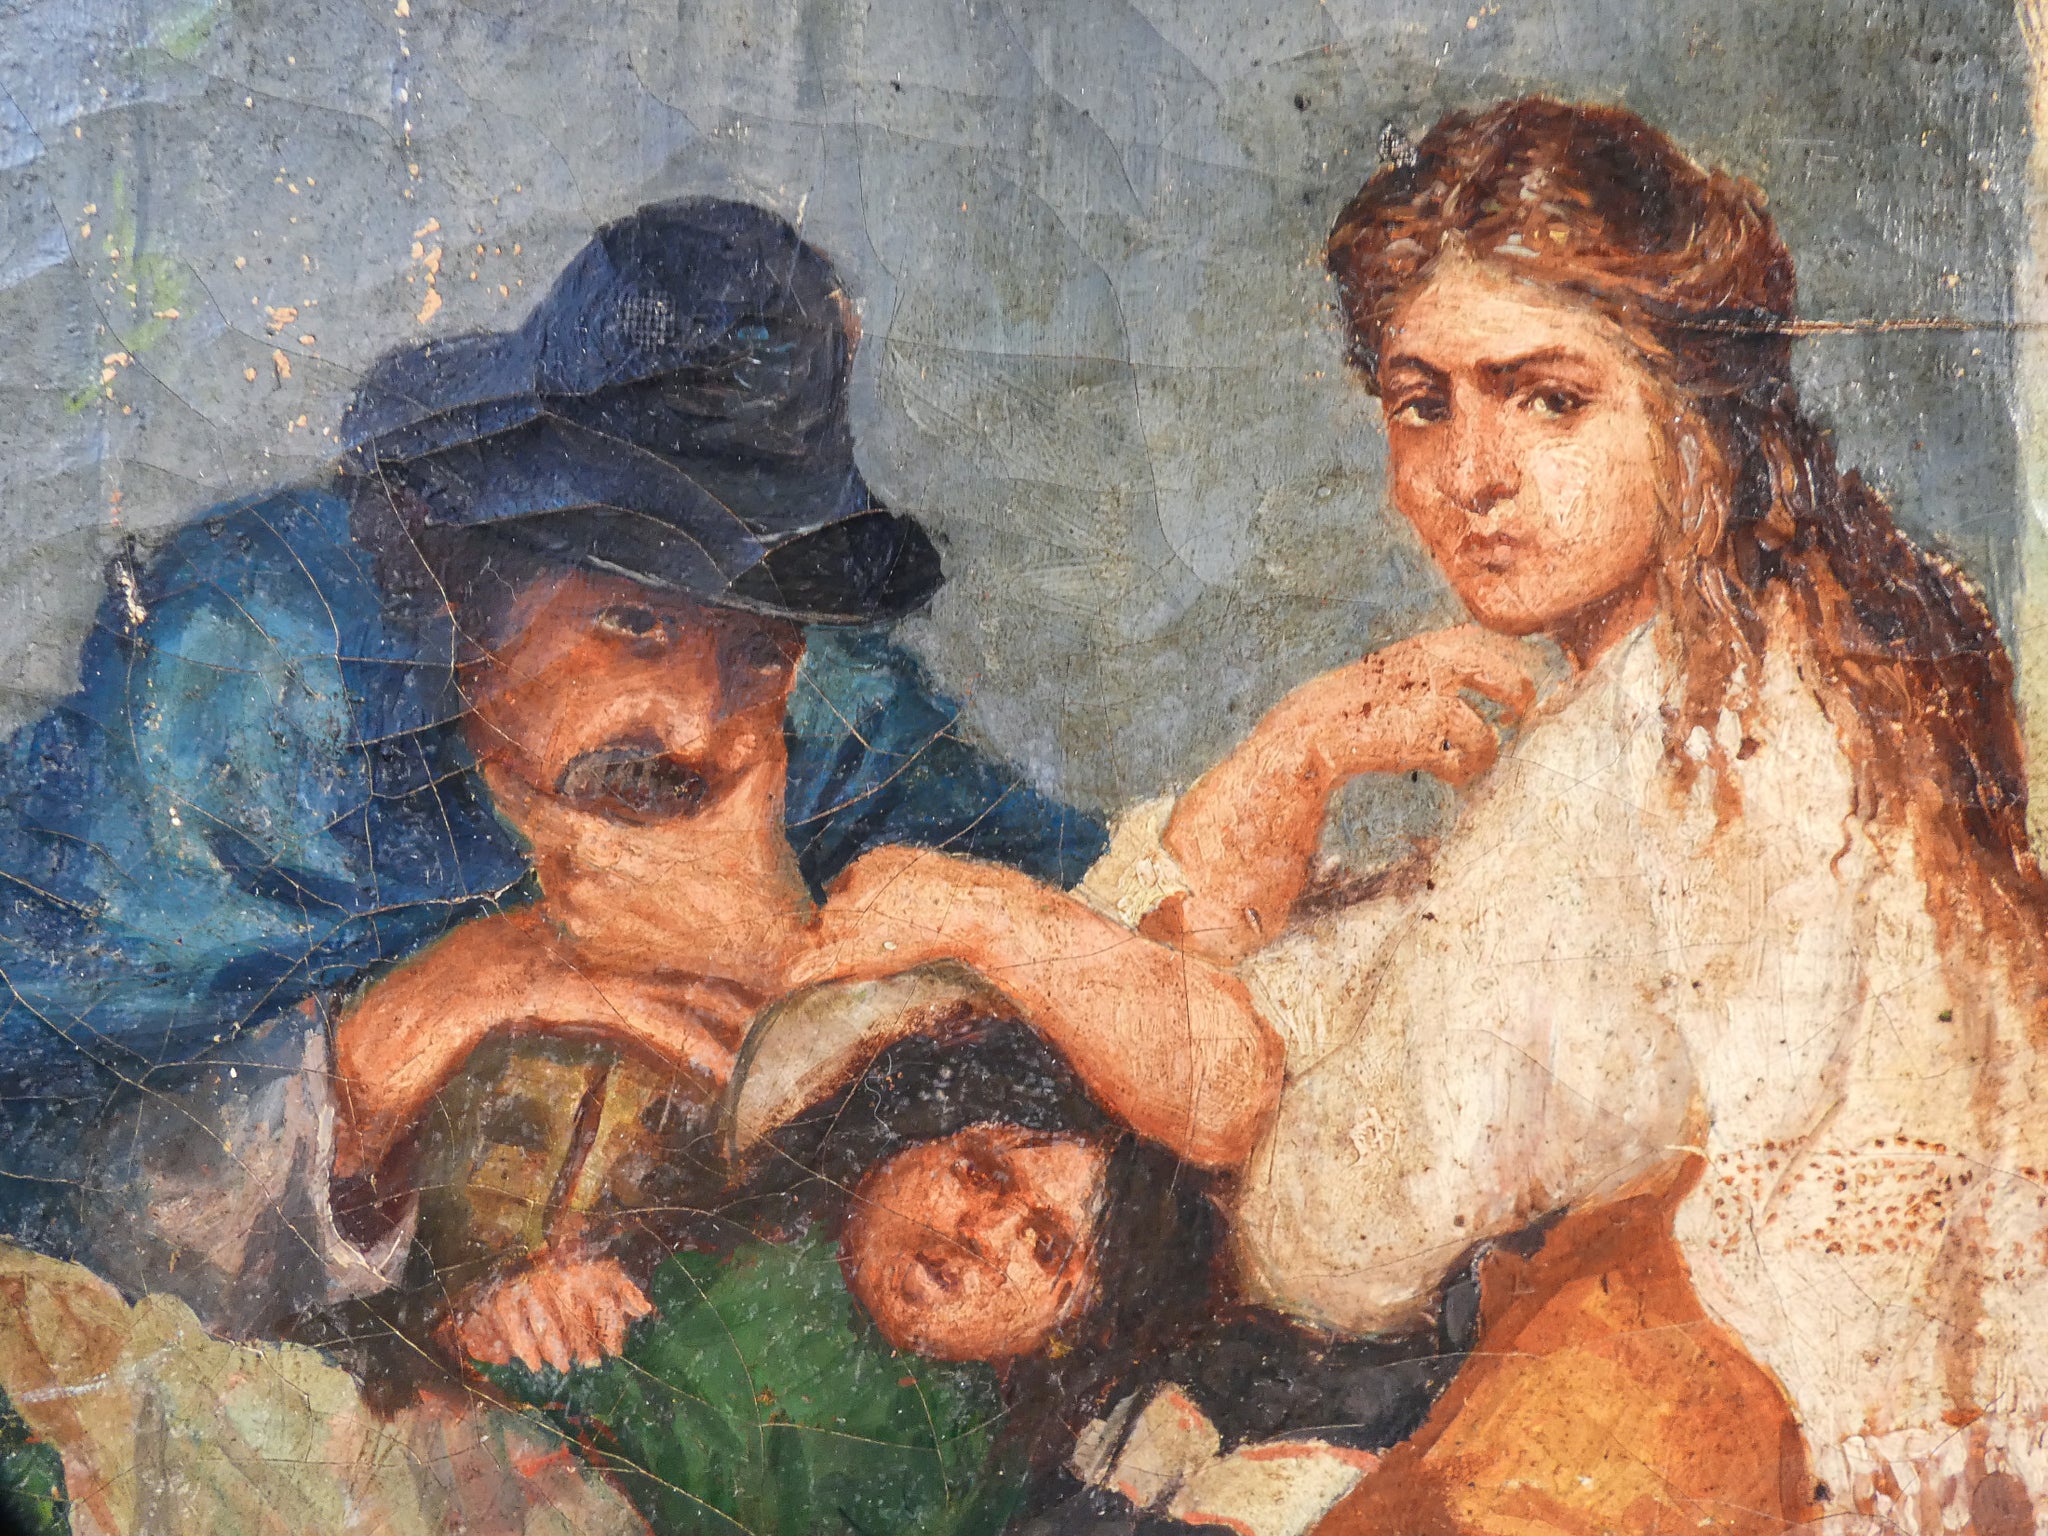 quadro epoca fine 1800 famiglia paesaggio dipinto olio tela cornice dorata